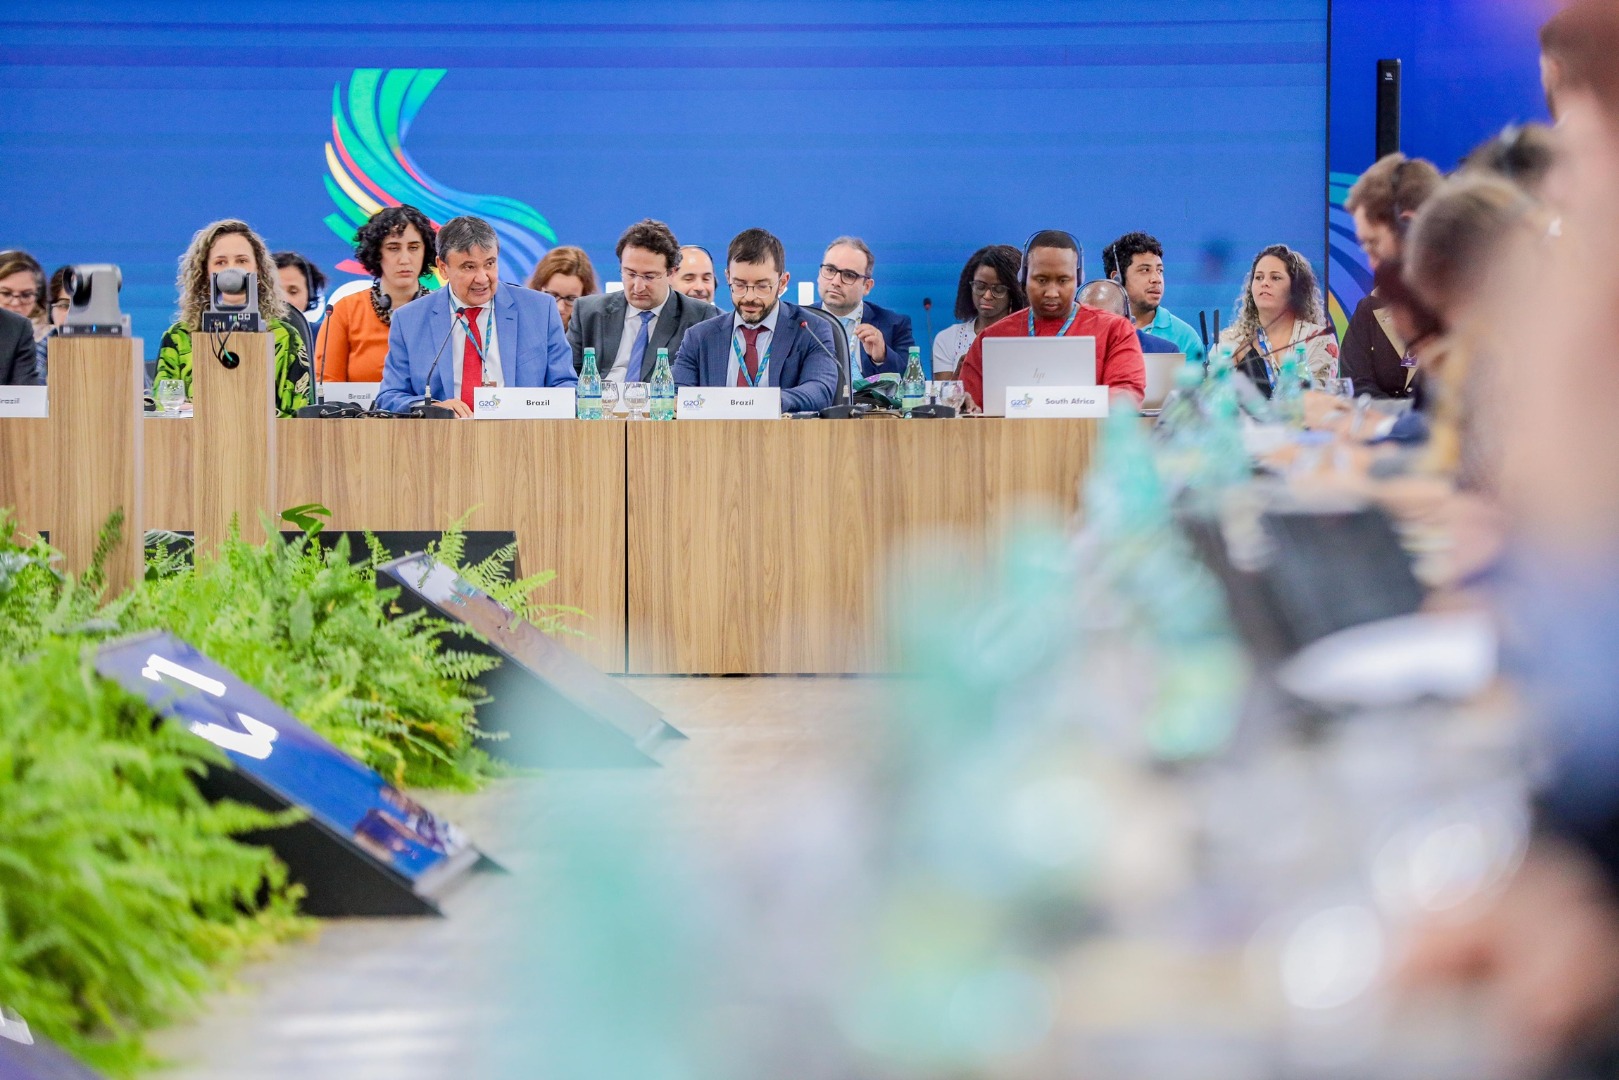 Primeira série de encontros presenciais reuniu 53 delegações, com participação de membros do G20, países convidados e organismos internacionais e ocorreu em Brasília, entre 20 e 22 de março